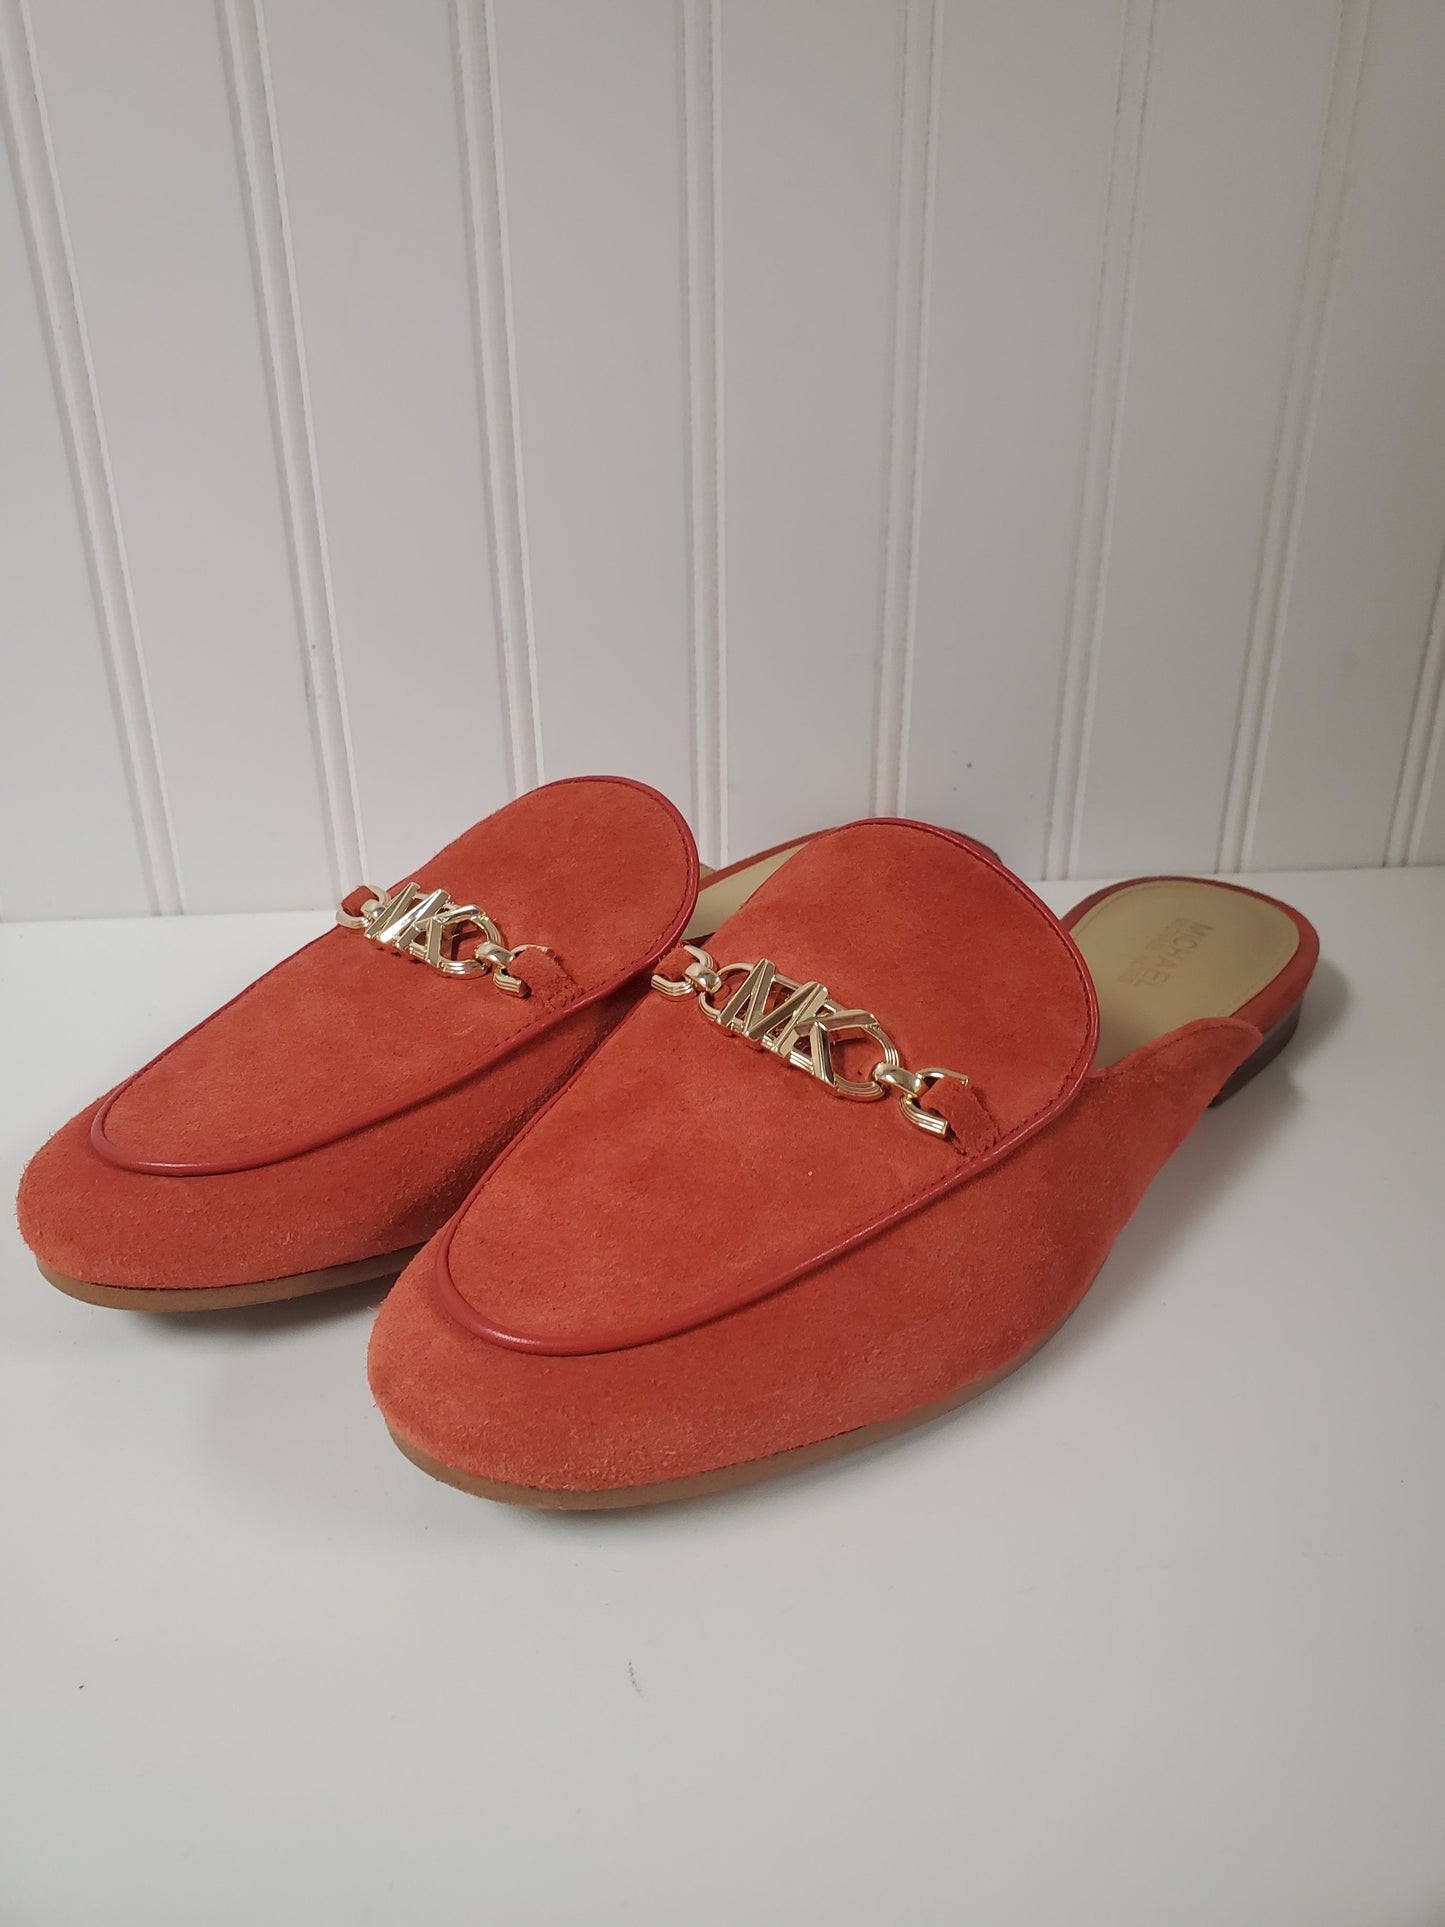 Orange Shoes Flats Michael By Michael Kors, Size 7